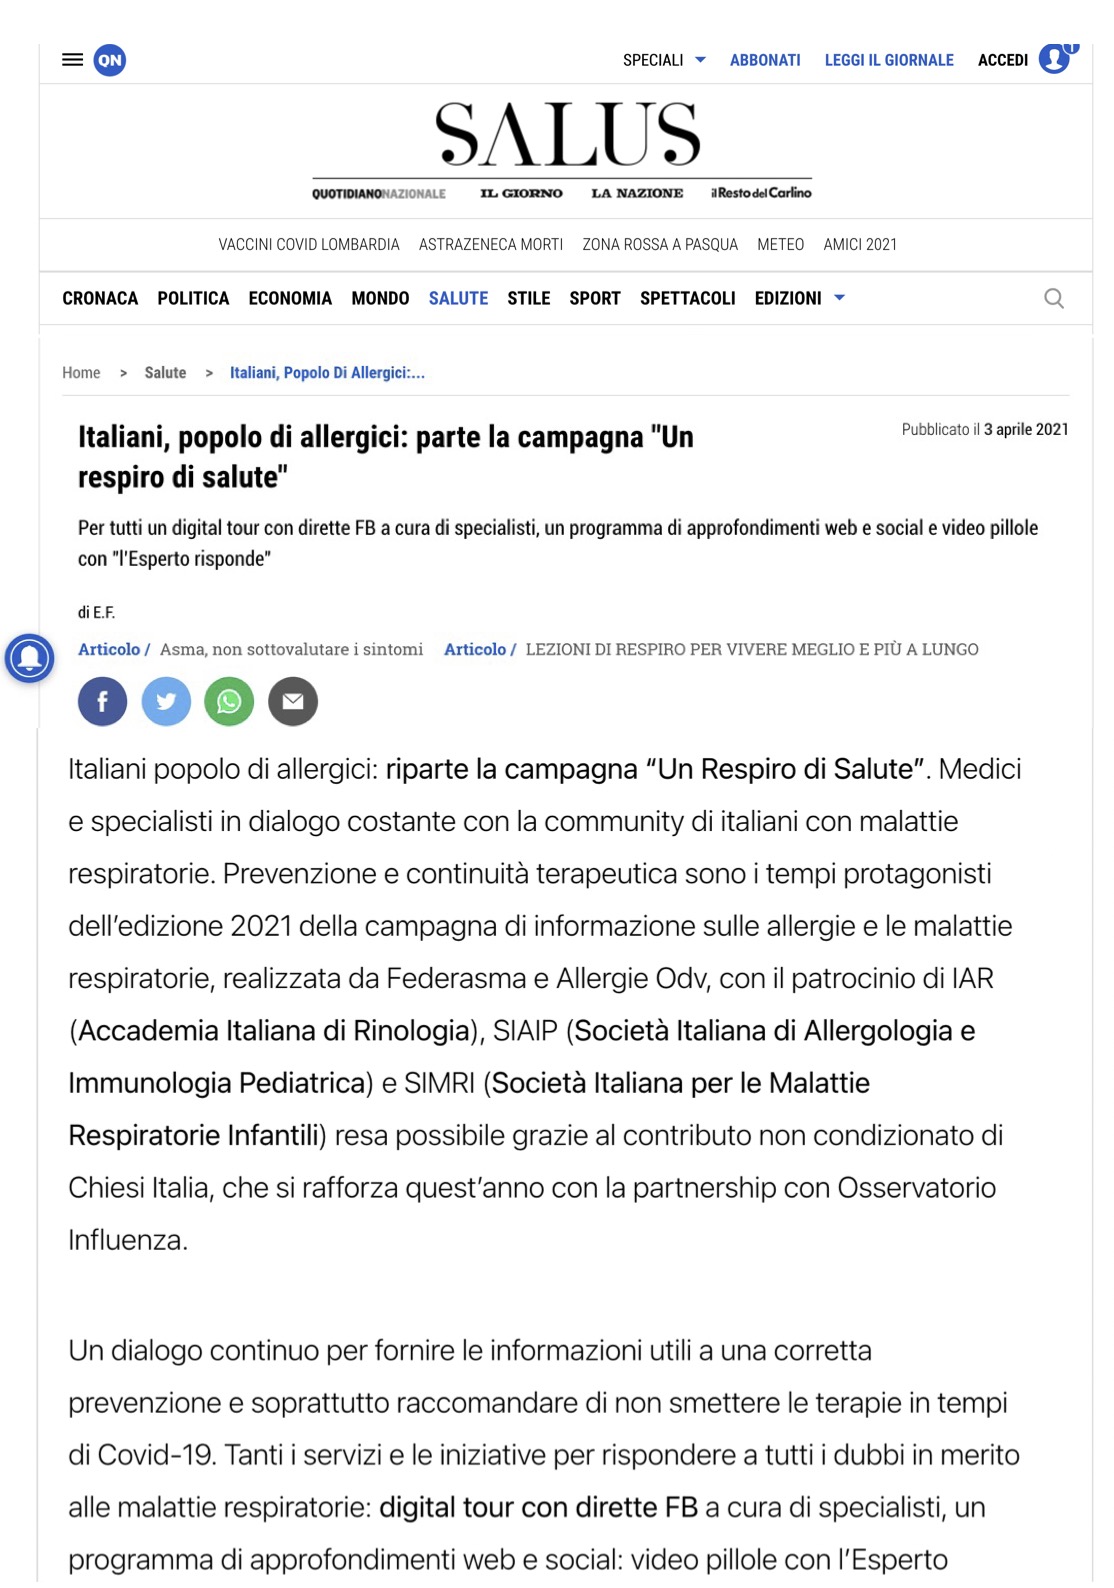 Italiani, popolo di allergici/ parte la campagna "Un respiro di salute" - Salute - ilgiorno.it